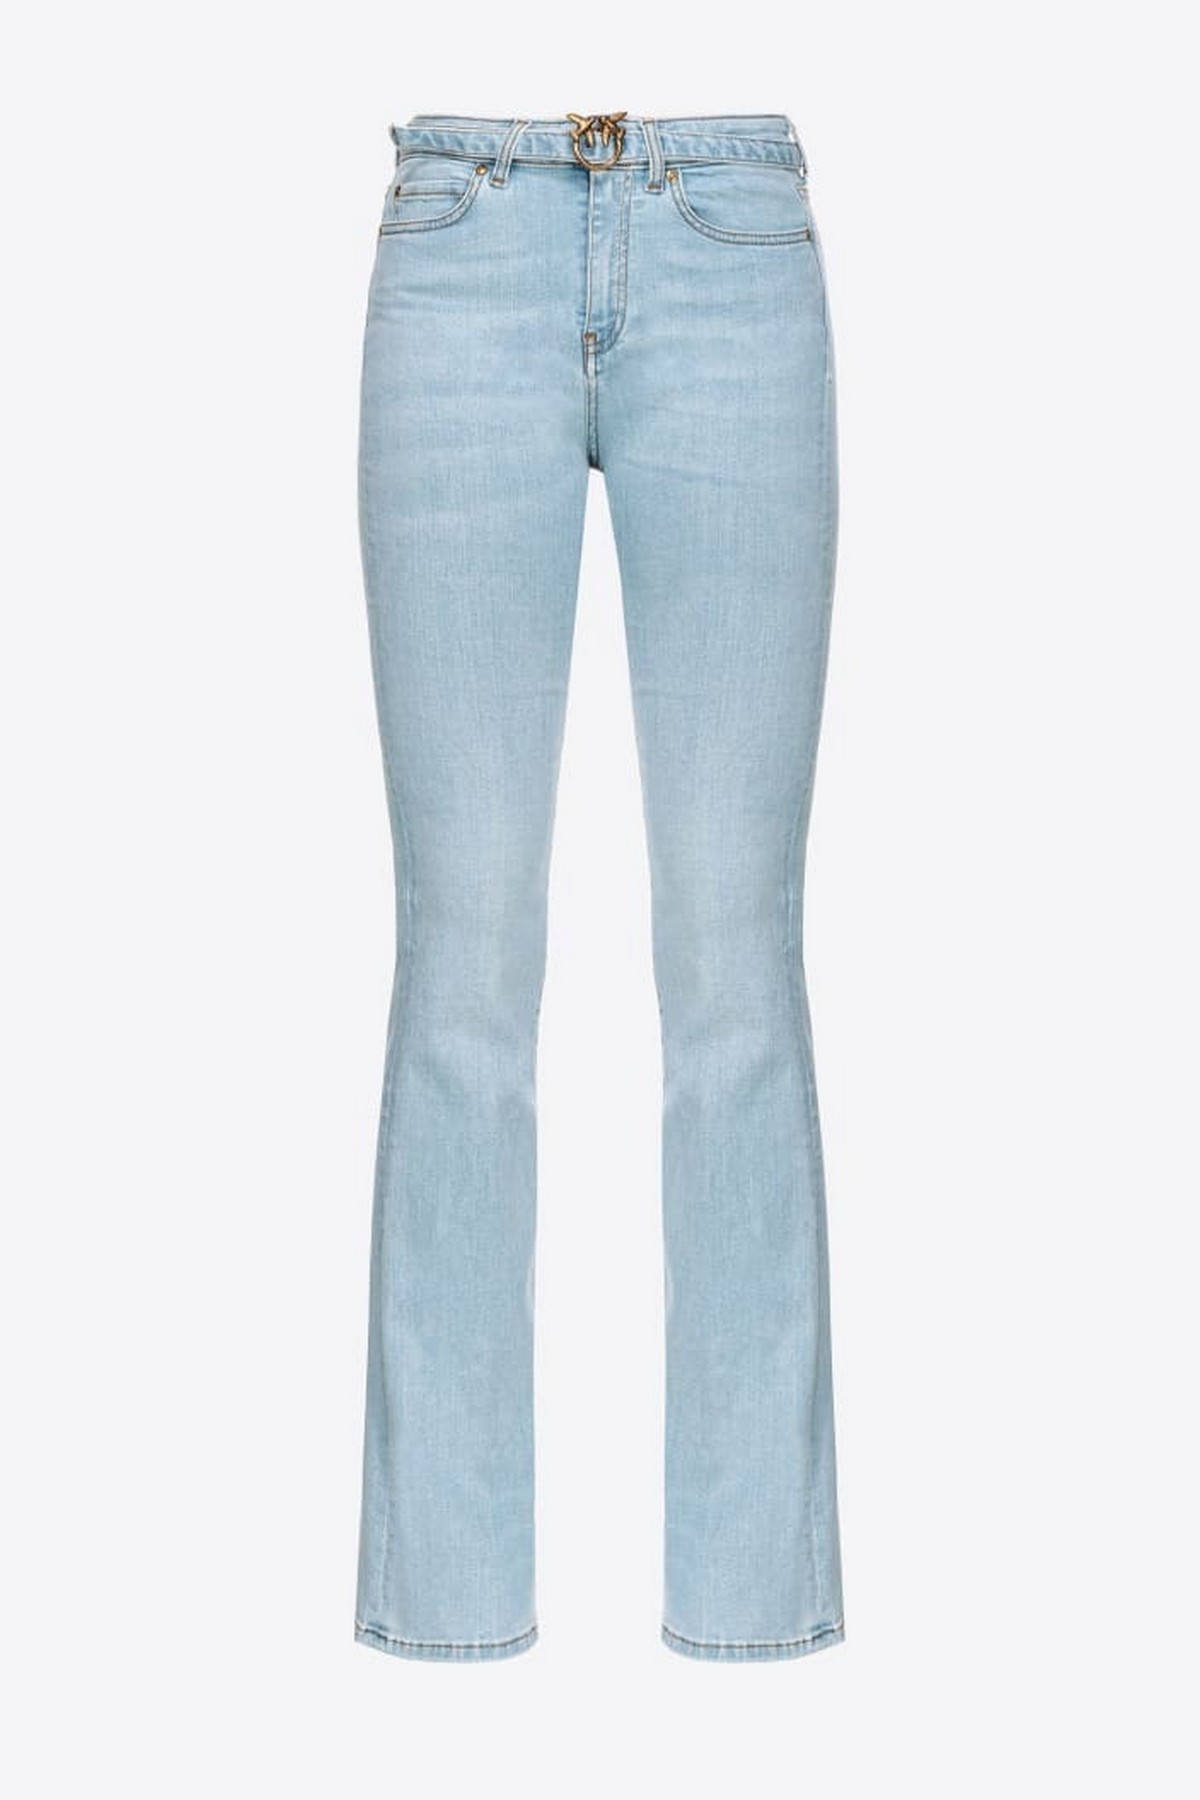 Jeans bleach in de kleur lichtblauw van het merk Pinko